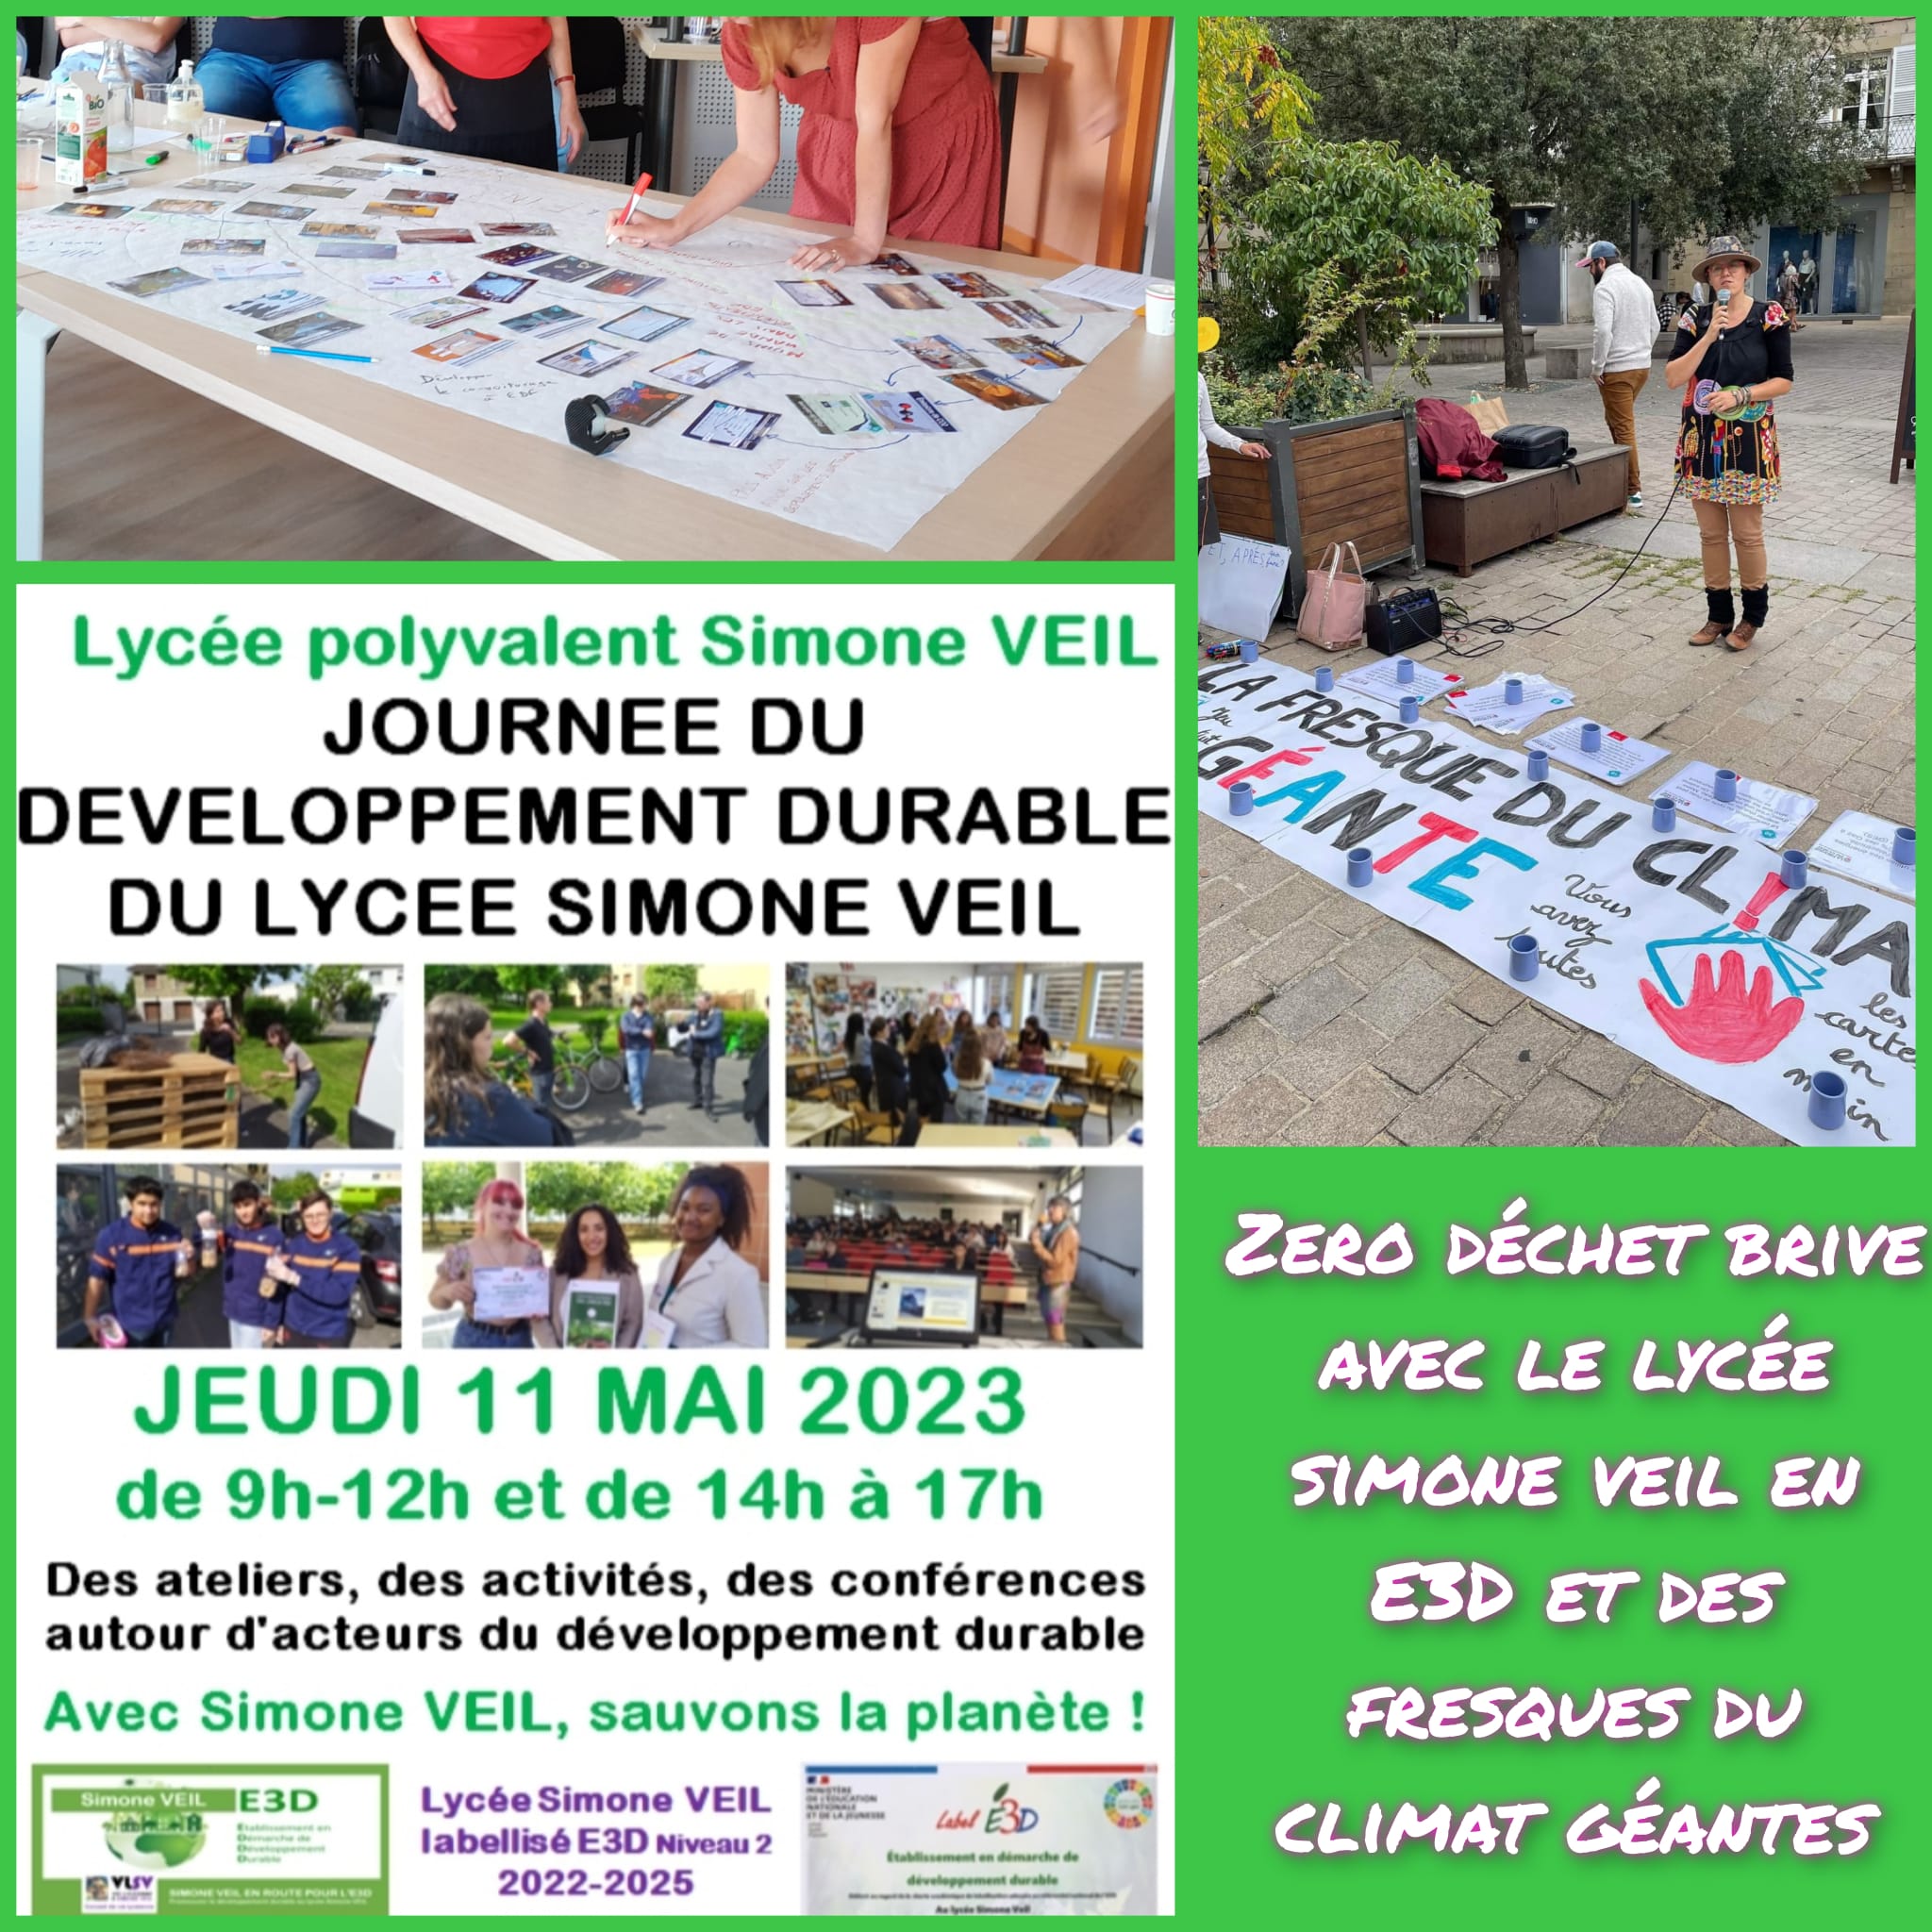 Journée de développement durable au Lycée Simone VEIL